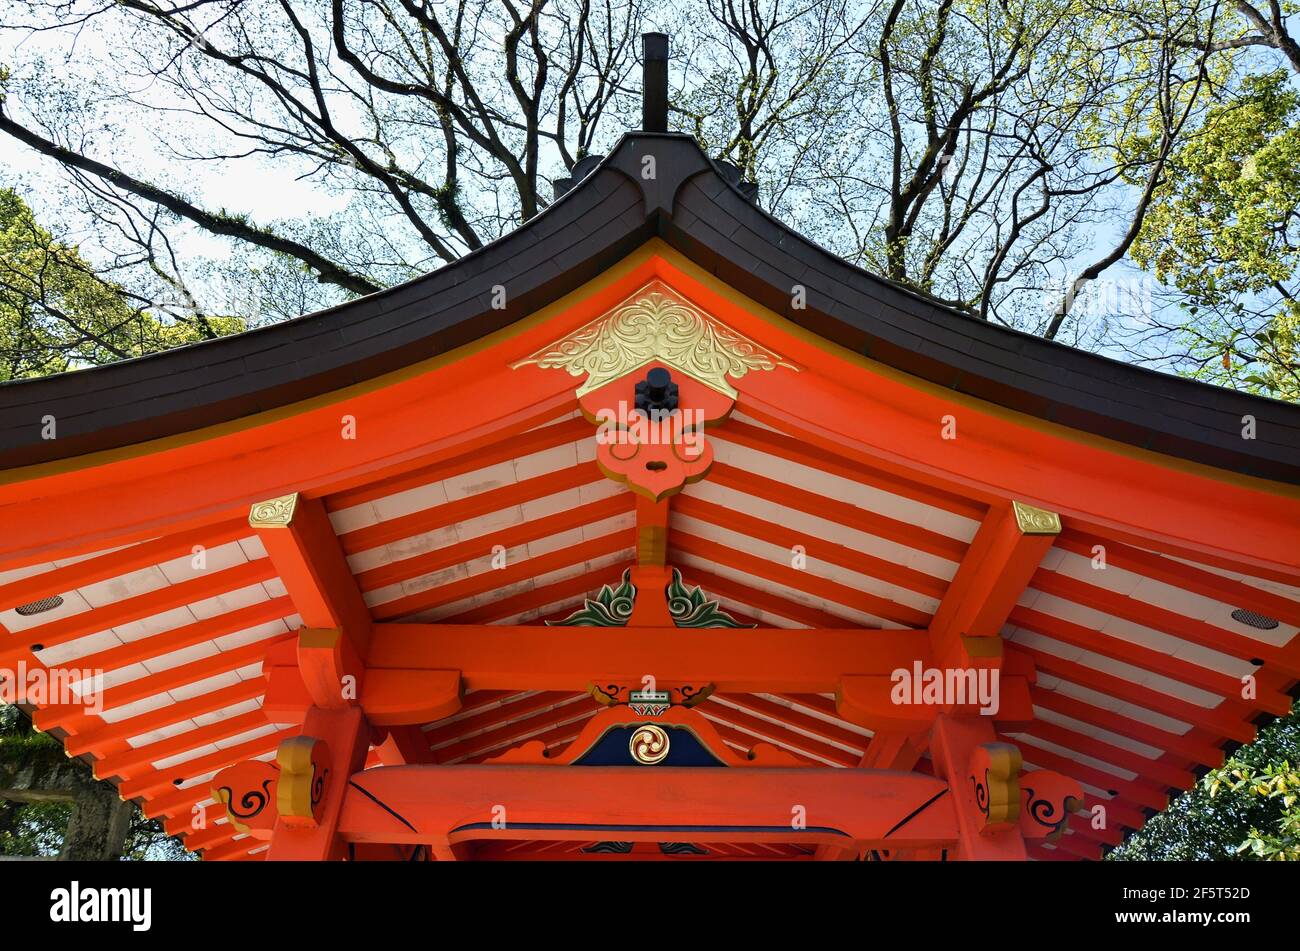 Dettaglio del tetto al Santuario di Sumiyoshi nella città di Fukuoka, Giappone. Questo santuario è dedicato a viaggi sicuri via mare. Foto Stock